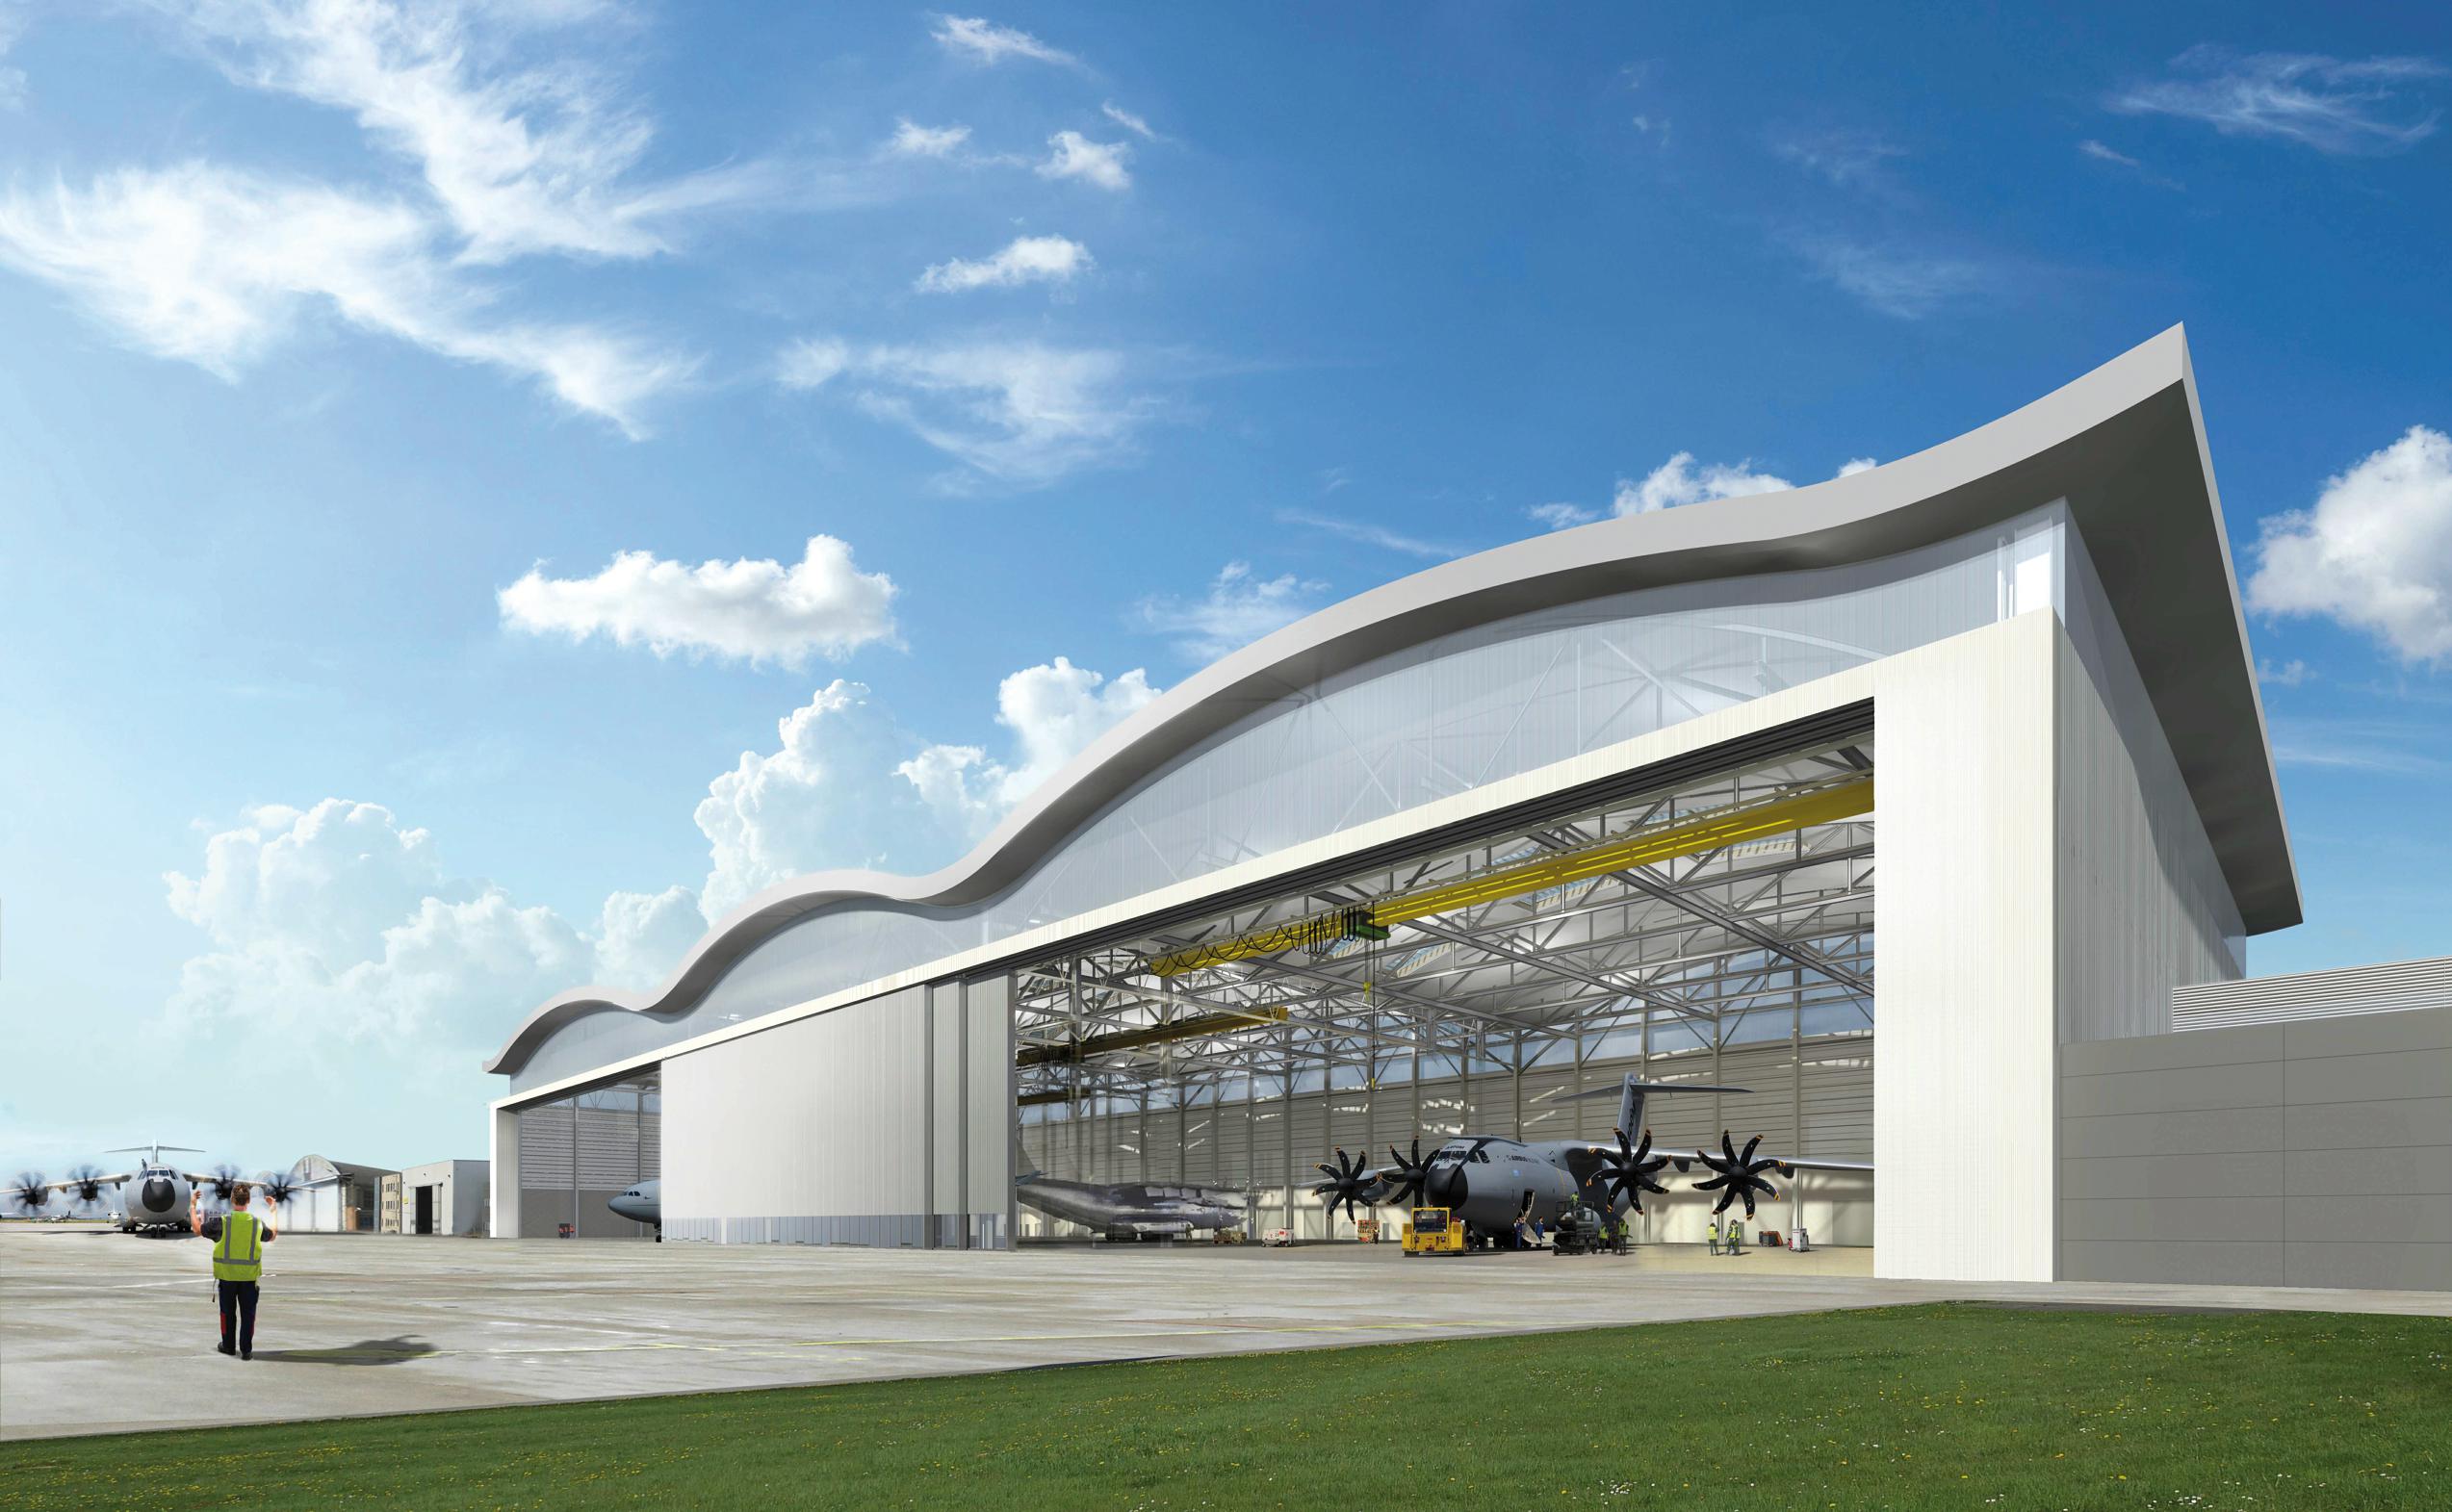 Hasselts bedrijf bouwt grootste vliegtuighangar ooit voor h... (Hasselt) - Het Belang van Limburg